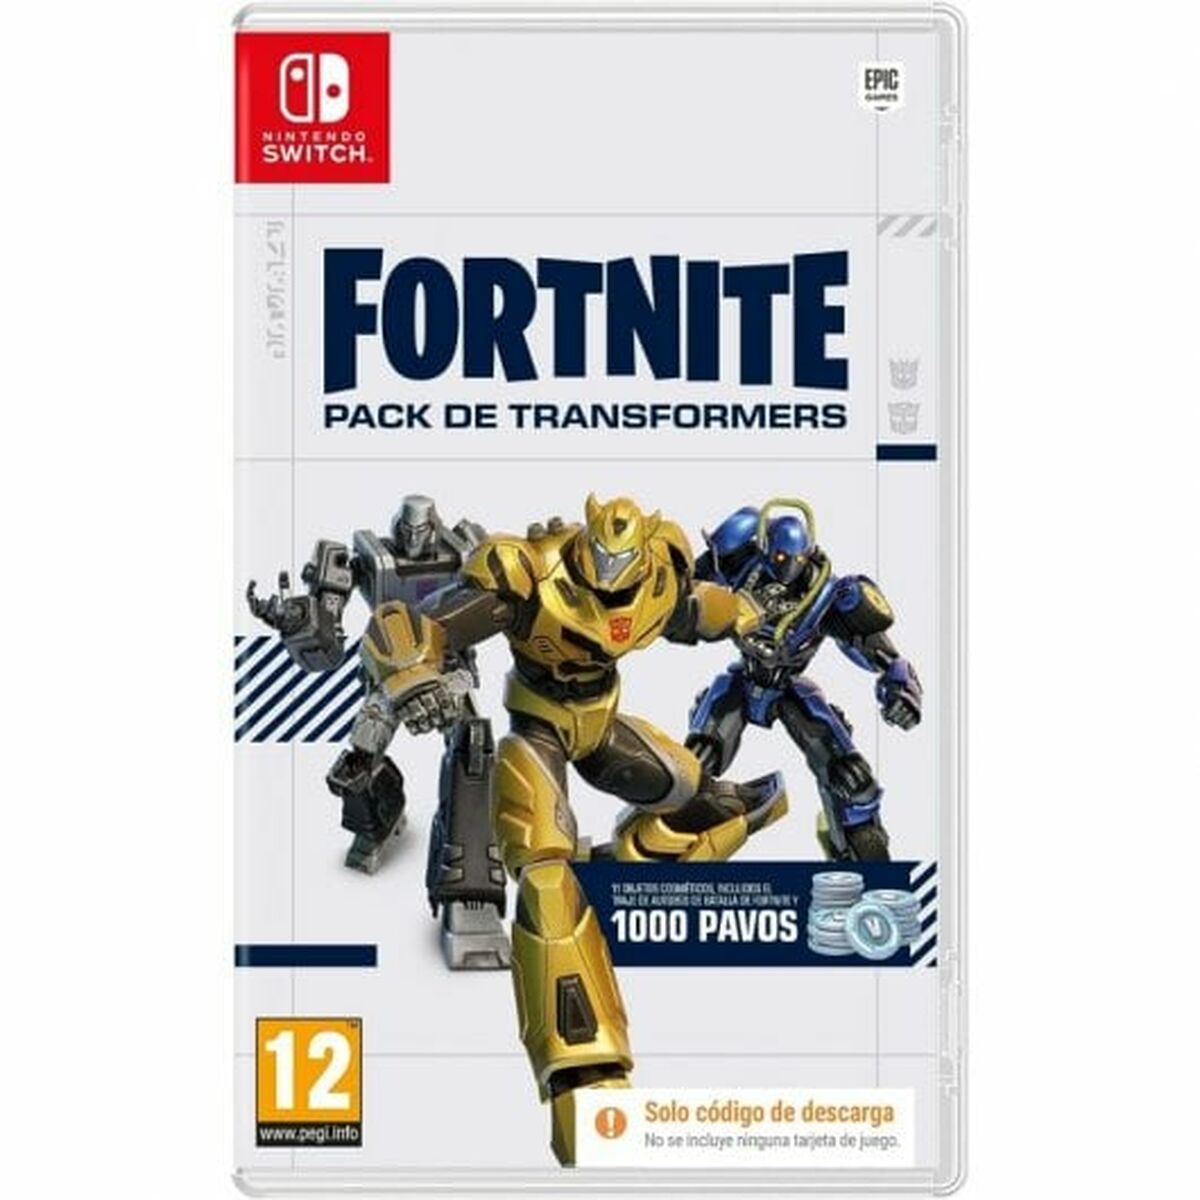 Jeu vidéo pour Switch Meridiem Games Fortnite Pack de Transformers